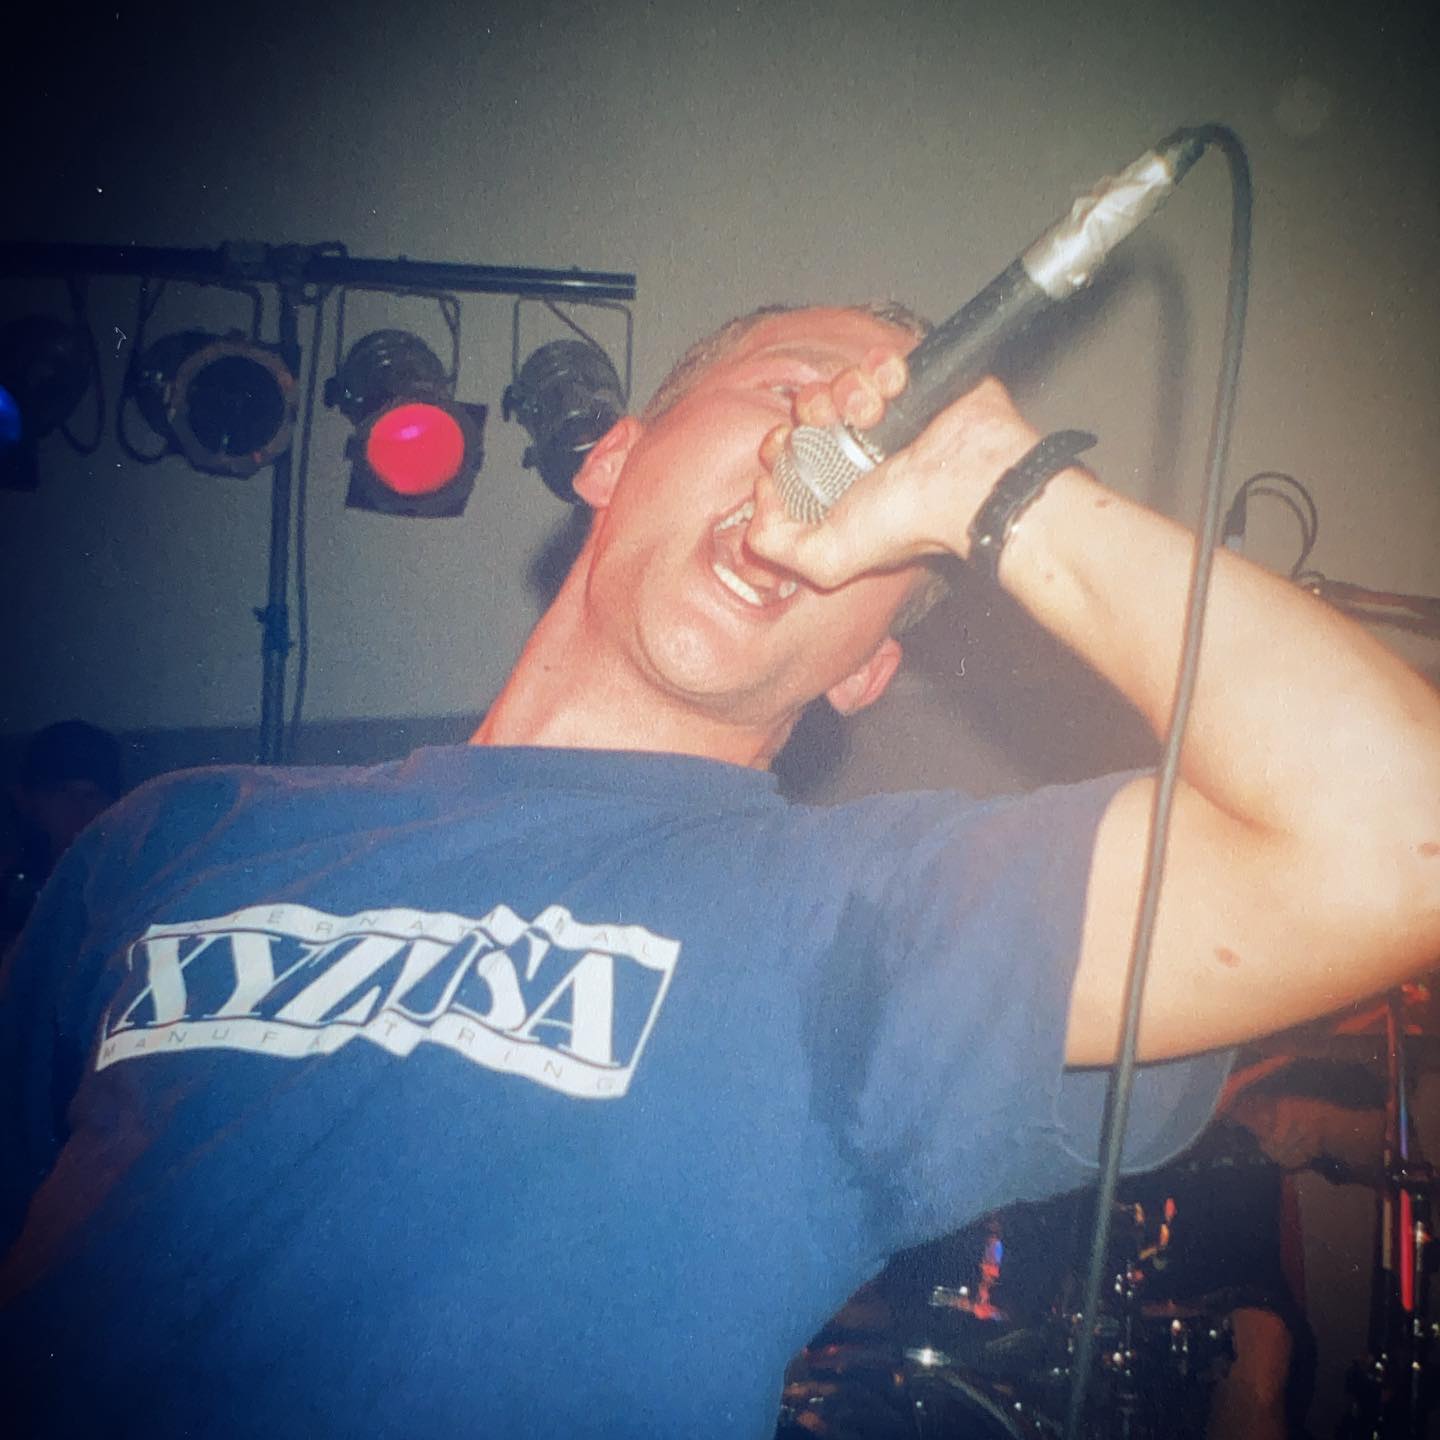 Reveal - de Poort Dongen (NL) - 1 November 1997 #hardcore #gigpic by @twentylandcrew